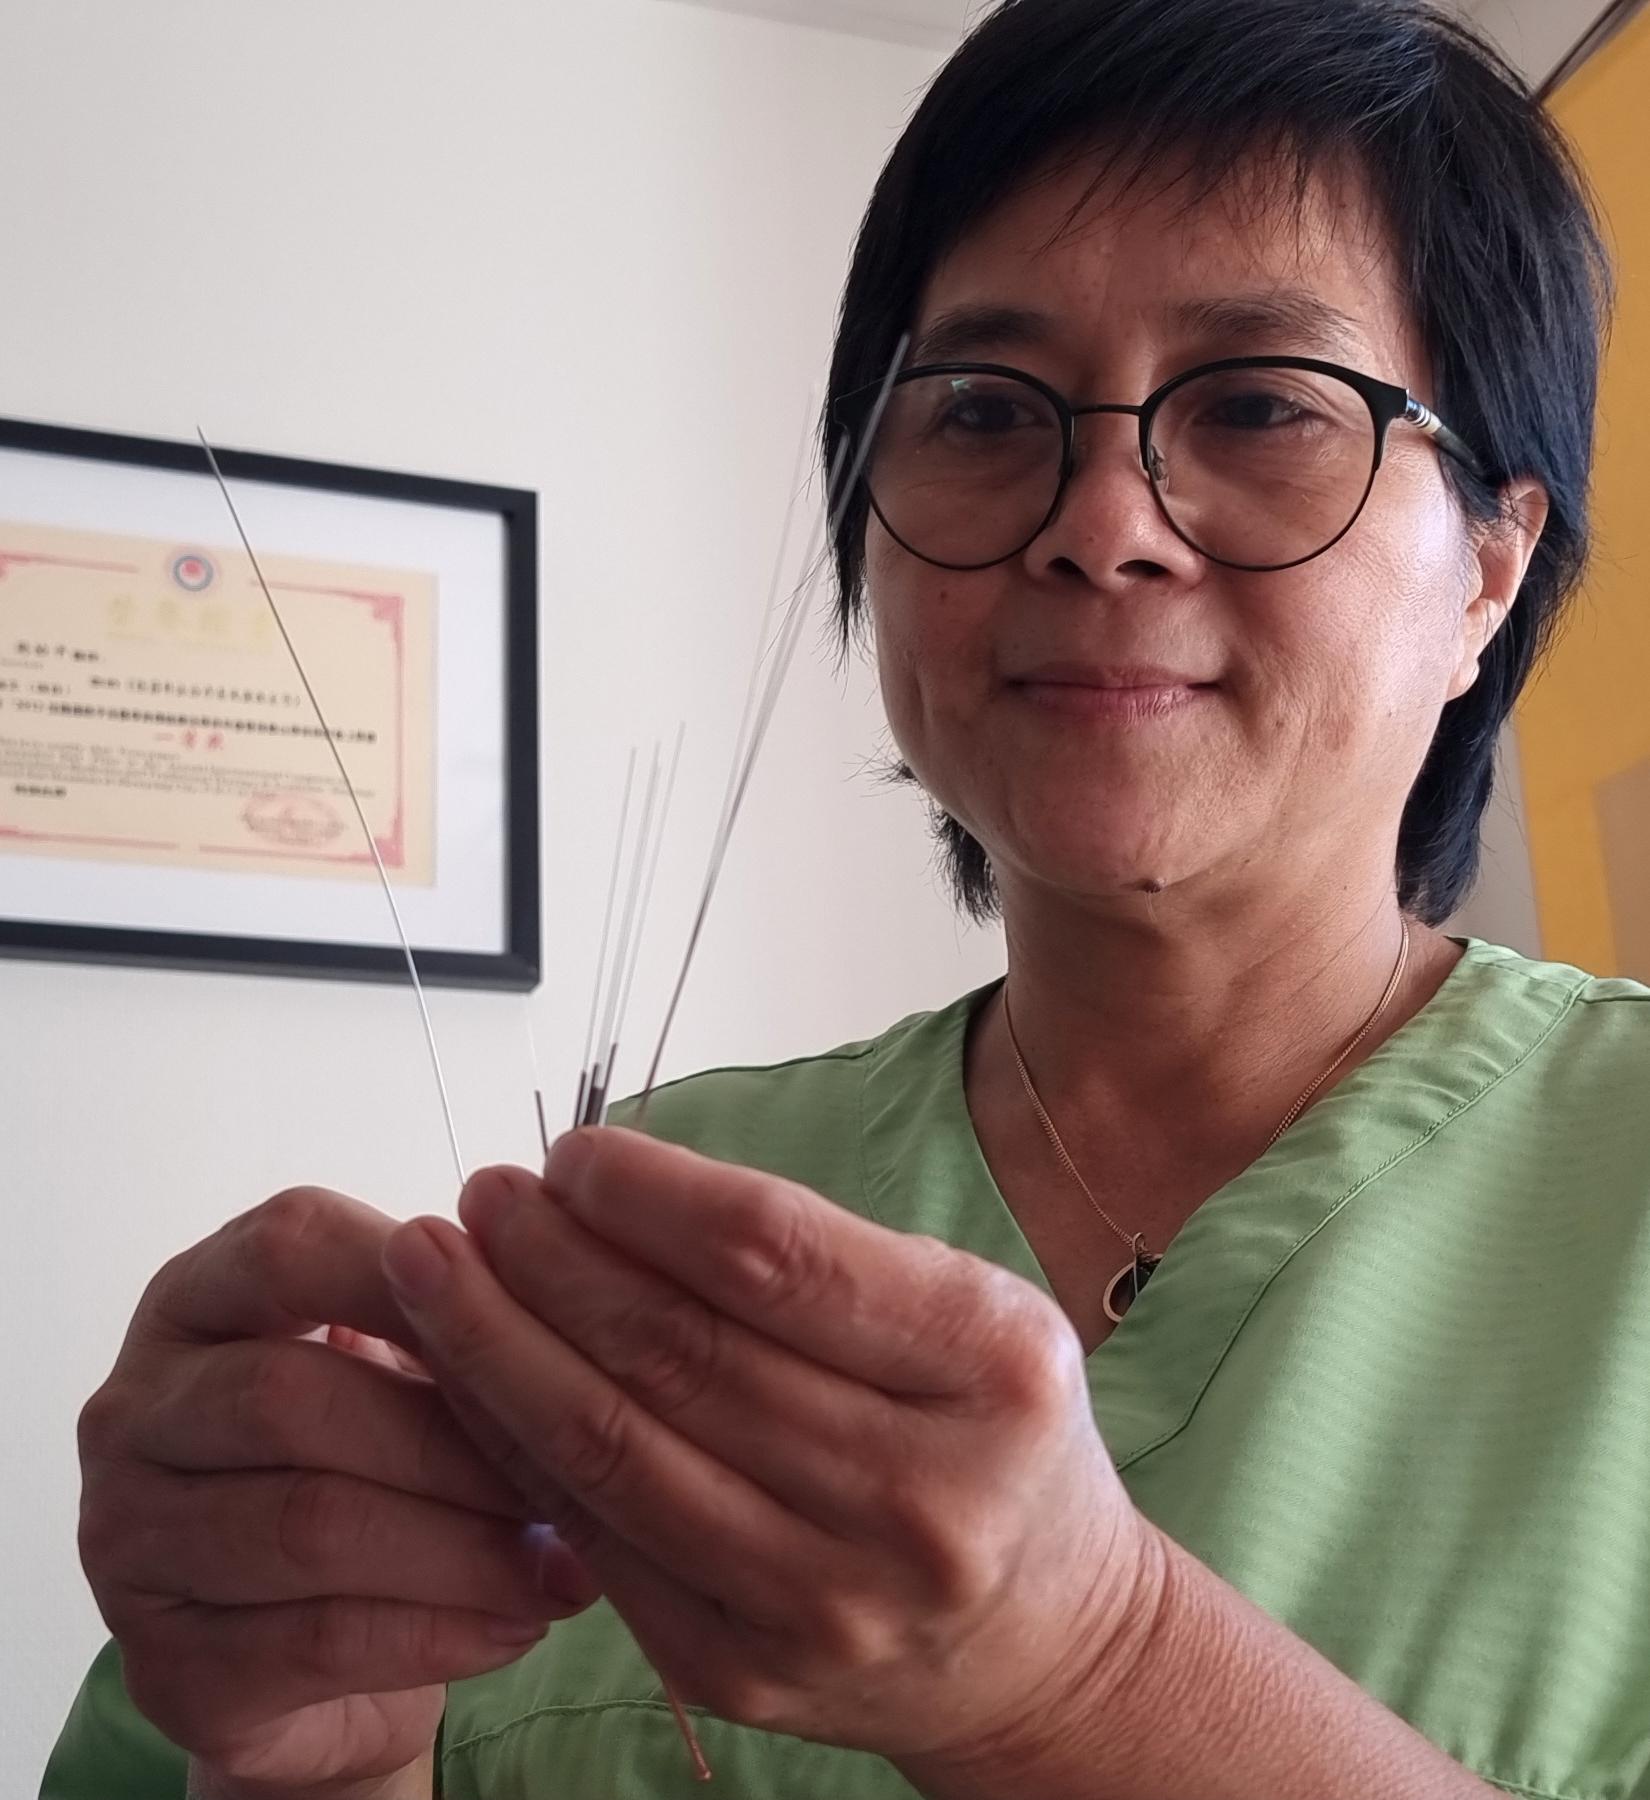 Doktor Yiping Zhou Thelander forskar och behandlar inom dynamisk akupunktur. Hon använder sig av nålar för att, som hon säger, återskapa balans i kroppen.